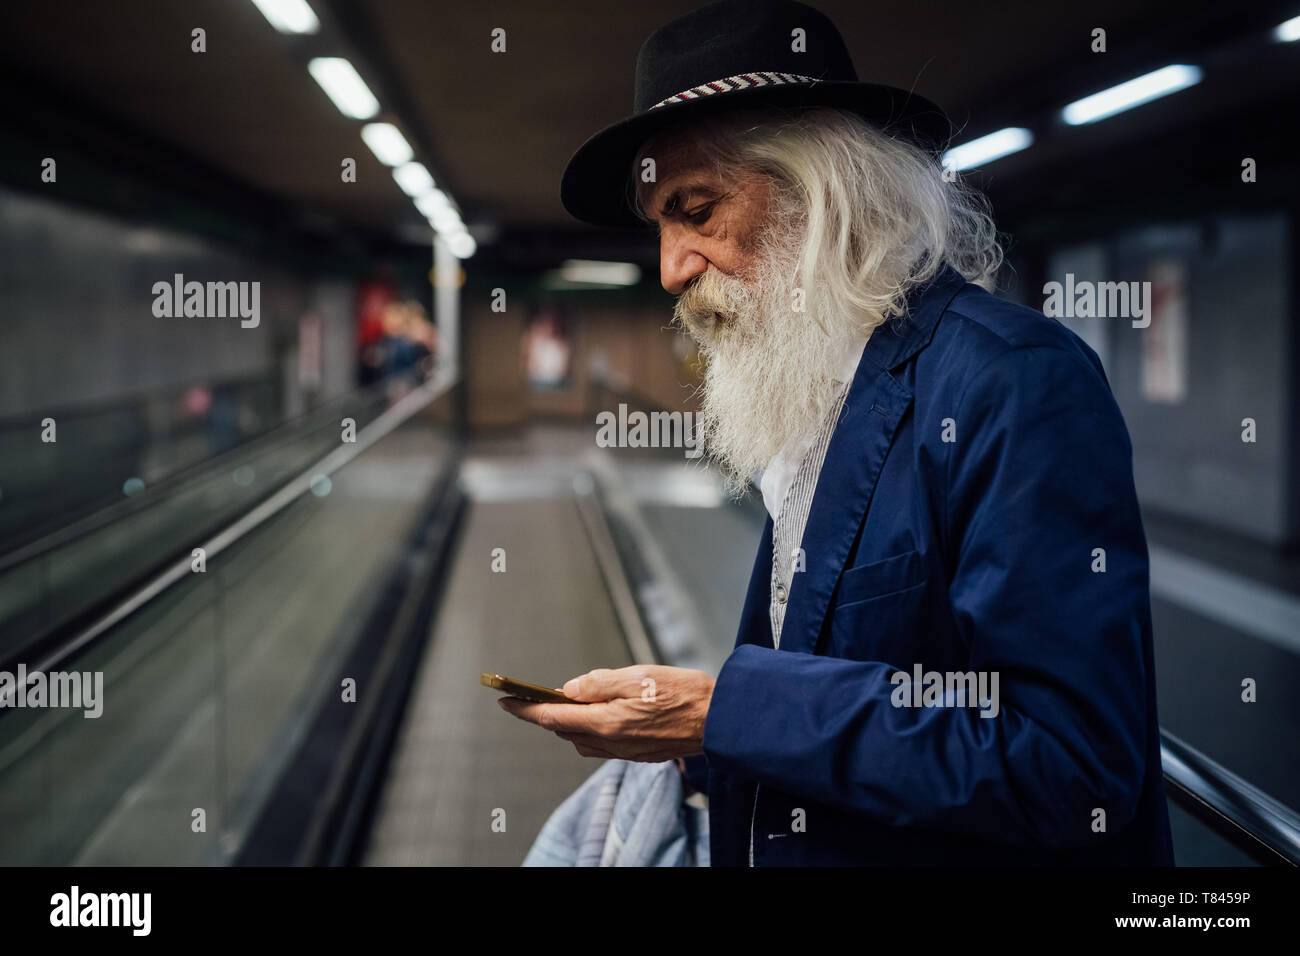 Senior businessman using smartphone à l'intérieur de la borne Banque D'Images